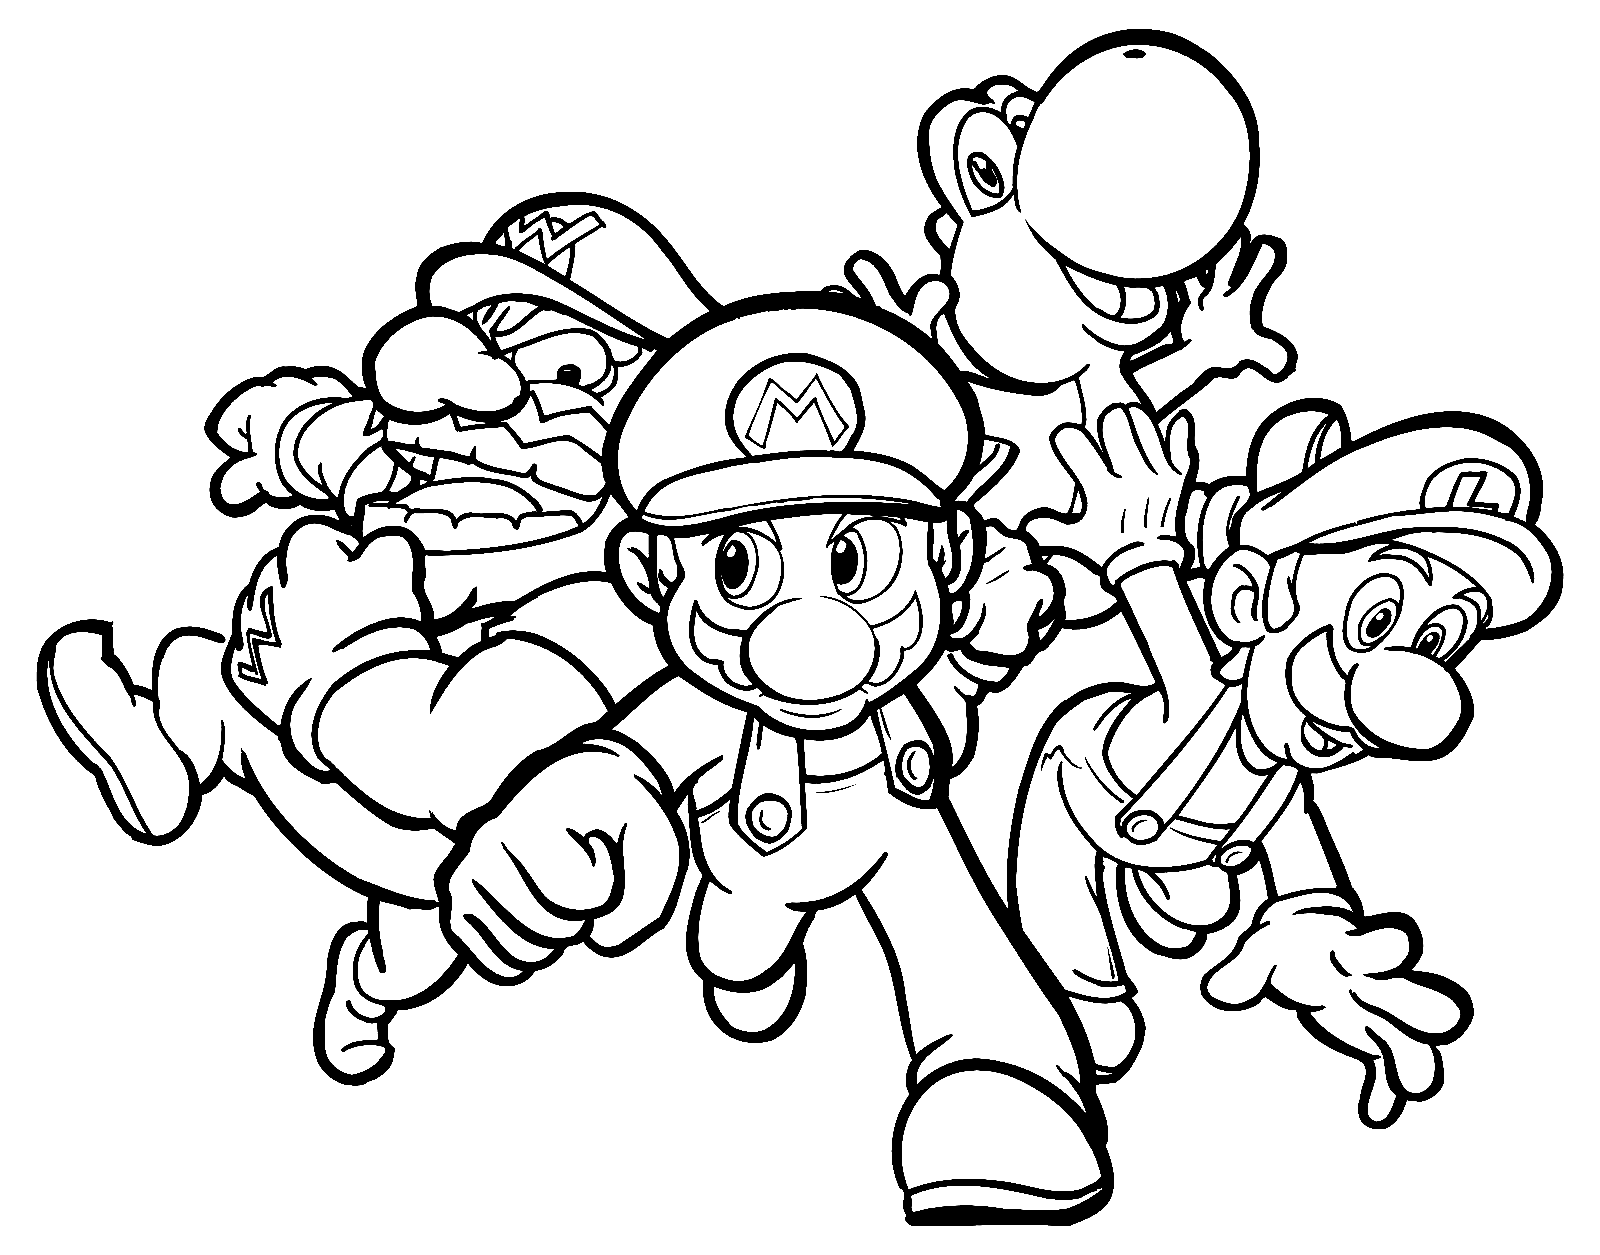 Equipe Mario Party de Mario